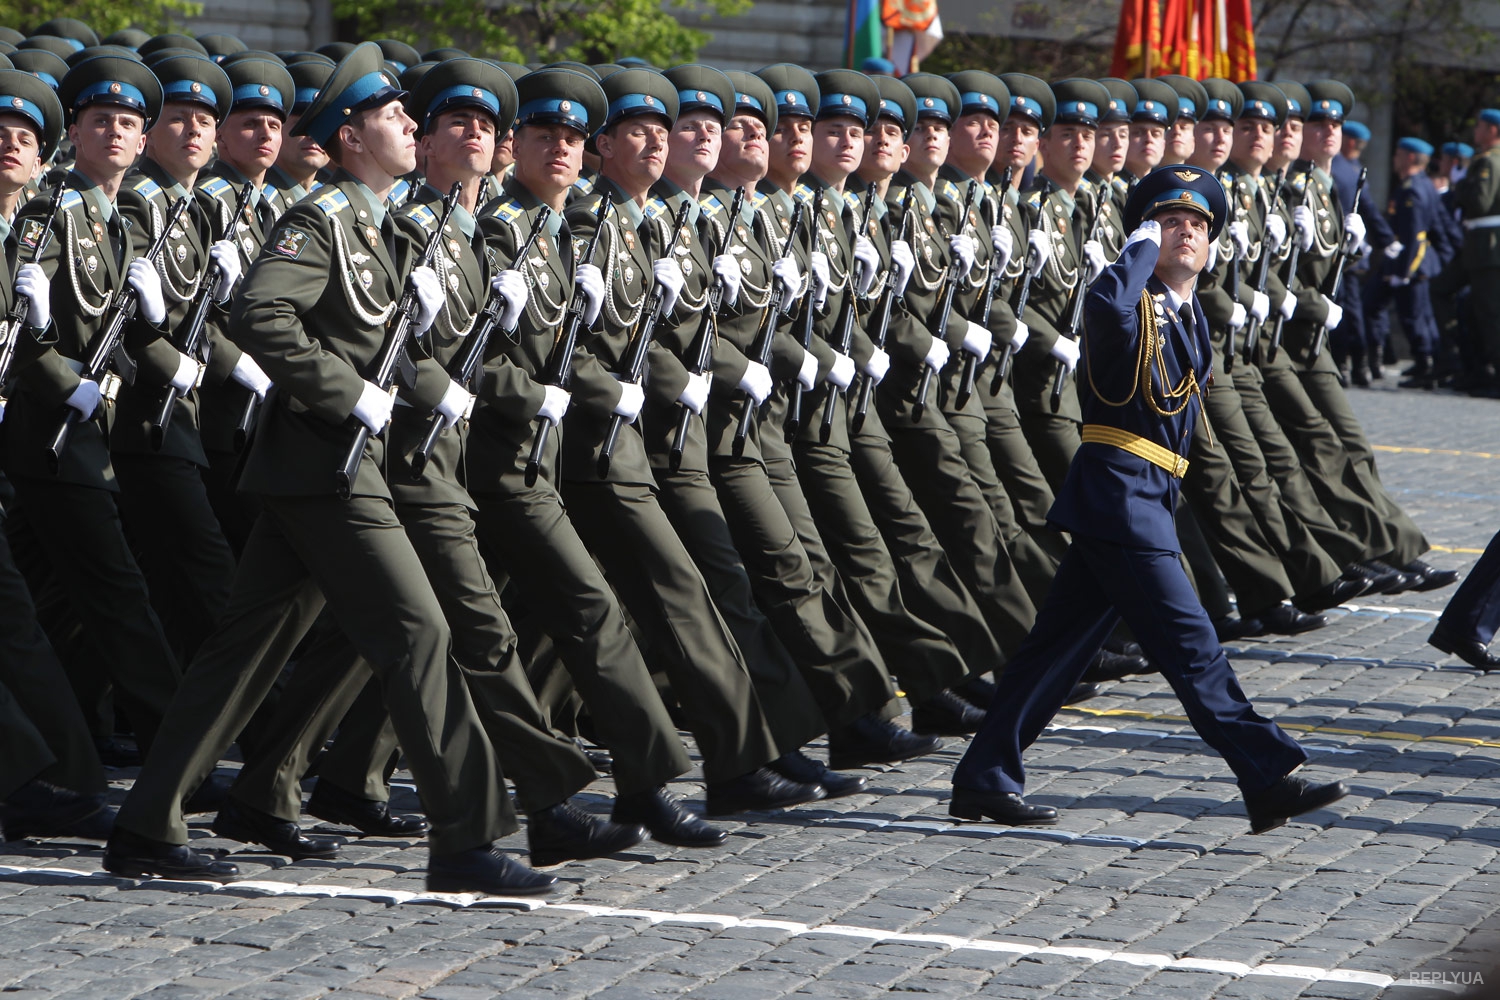 Военные шагают. Солдаты на параде. Строй солдат на параде. Солдаты маршируют на параде. Марш российских солдат.